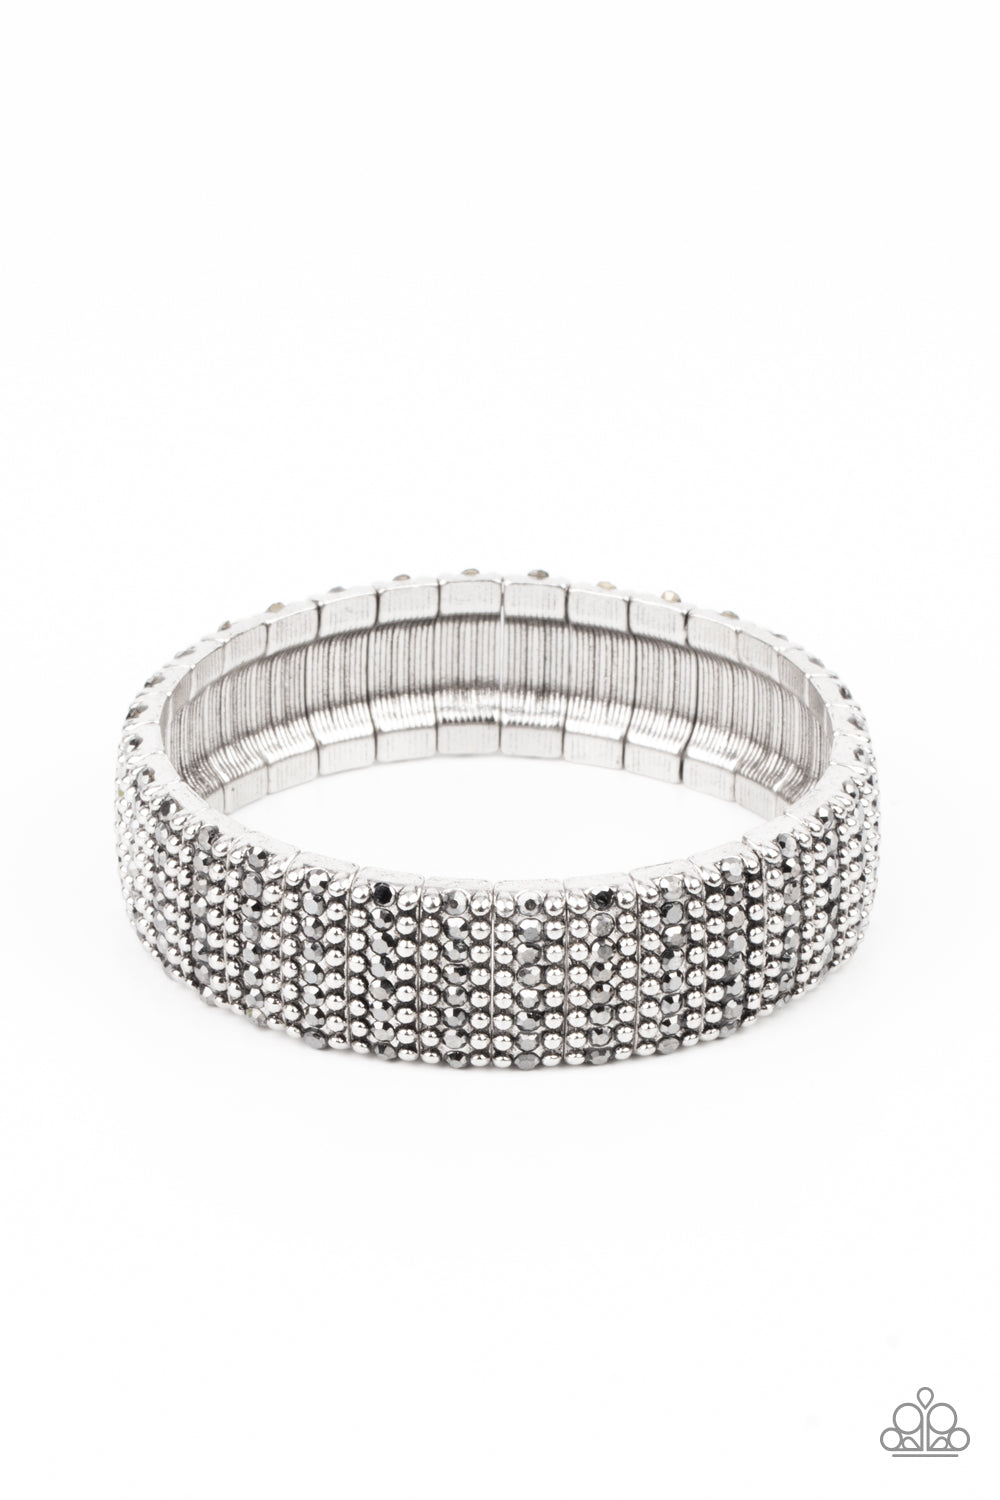 The GRIT Factor Paparazzi Accessories Bracelet Silver